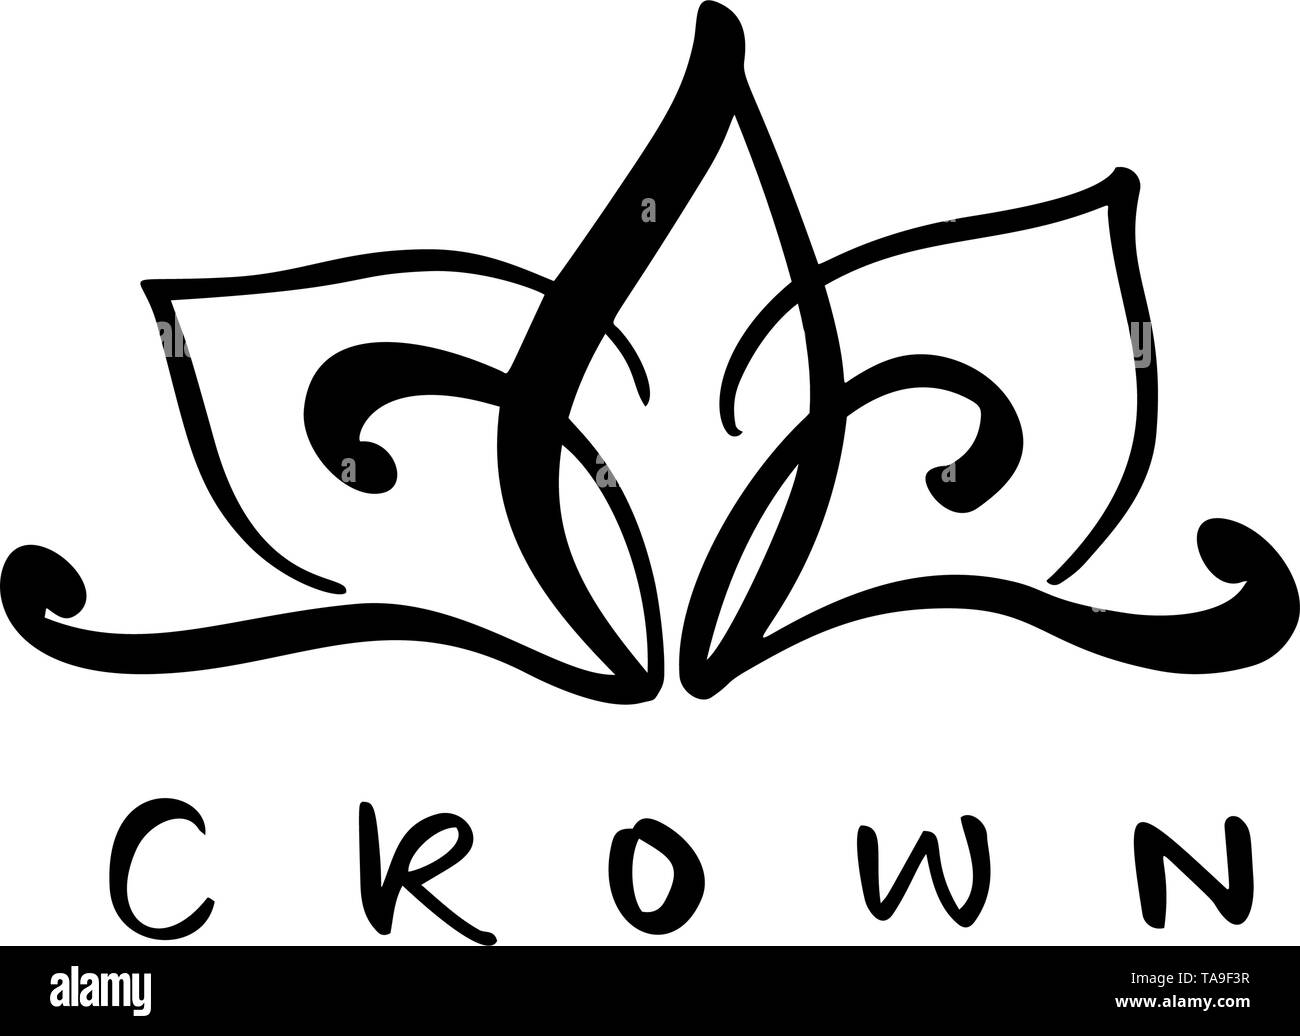 Handgezeichnetes Symbol Einer Stilisierten Ikonen Krone Und Kalligraphischem Wort Krone Vektorgrafik Isoliert Auf Weiss Logo Design Stock Vektorgrafik Alamy